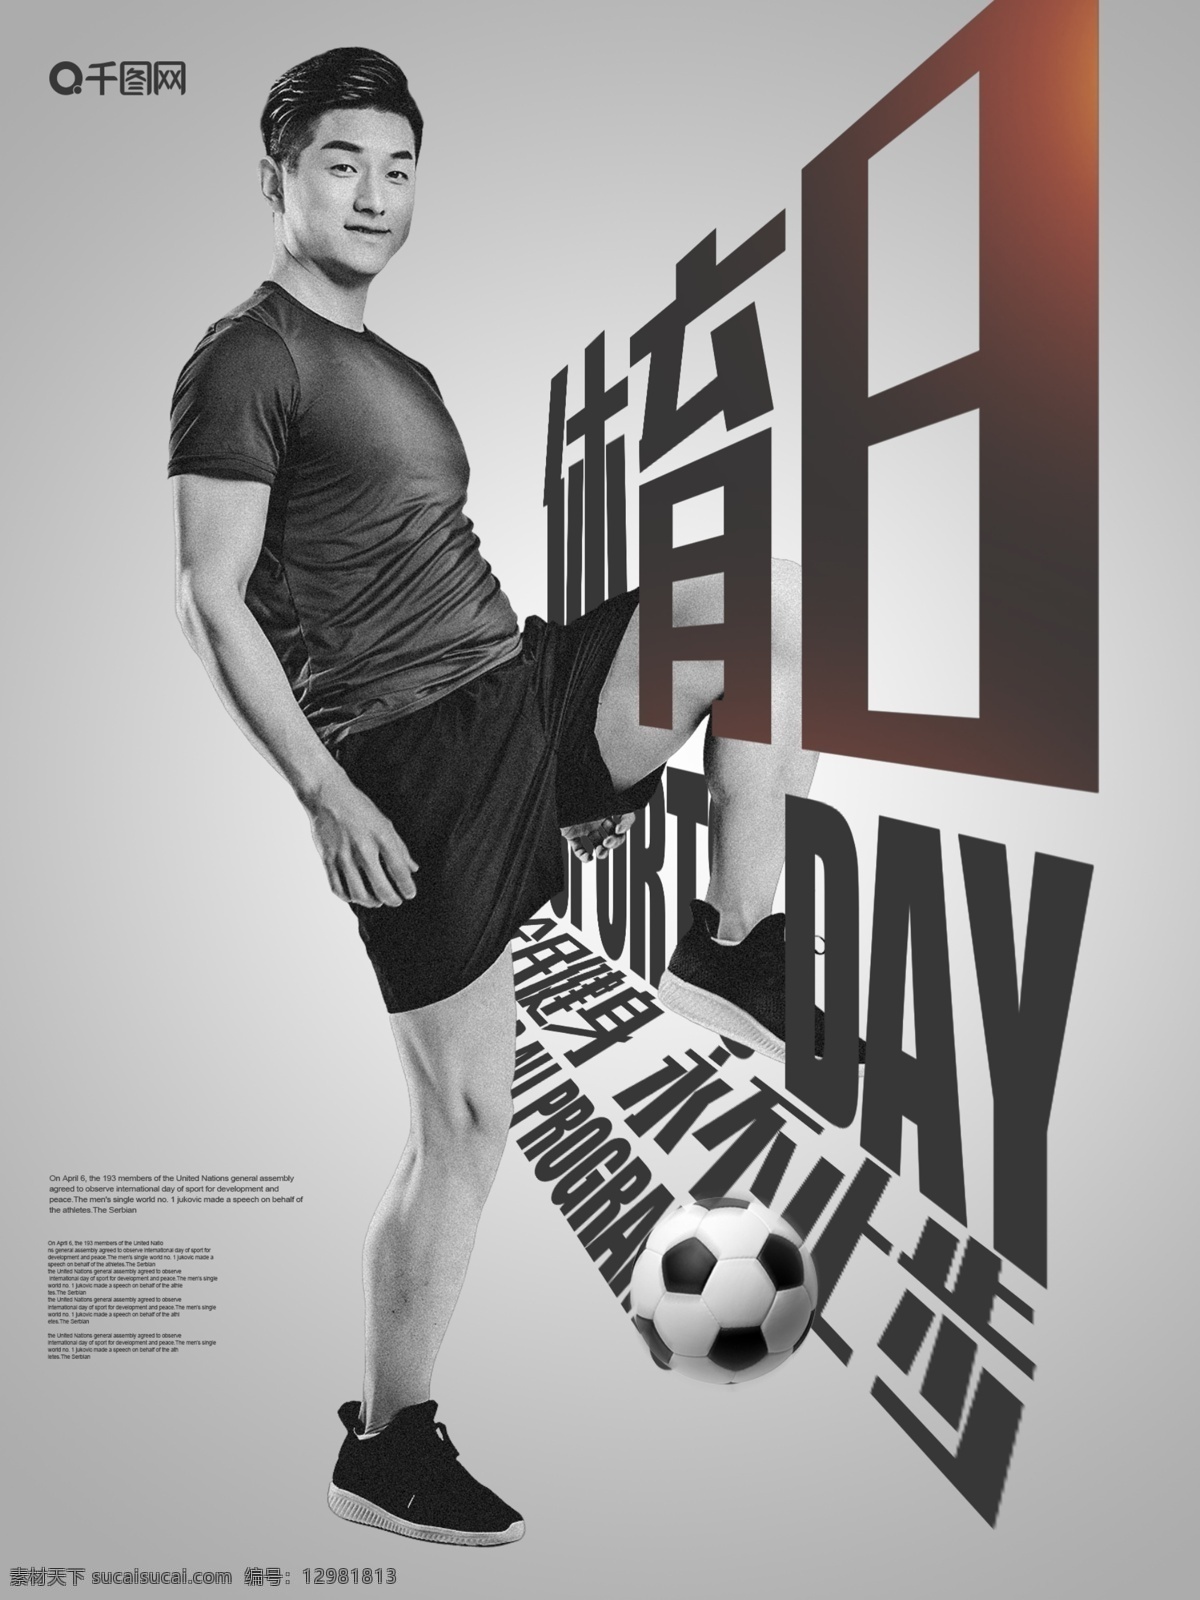 简约 体育 日 运动 宣传海报 简约风 跑步 健康生活 清新 活力 体育日 海报